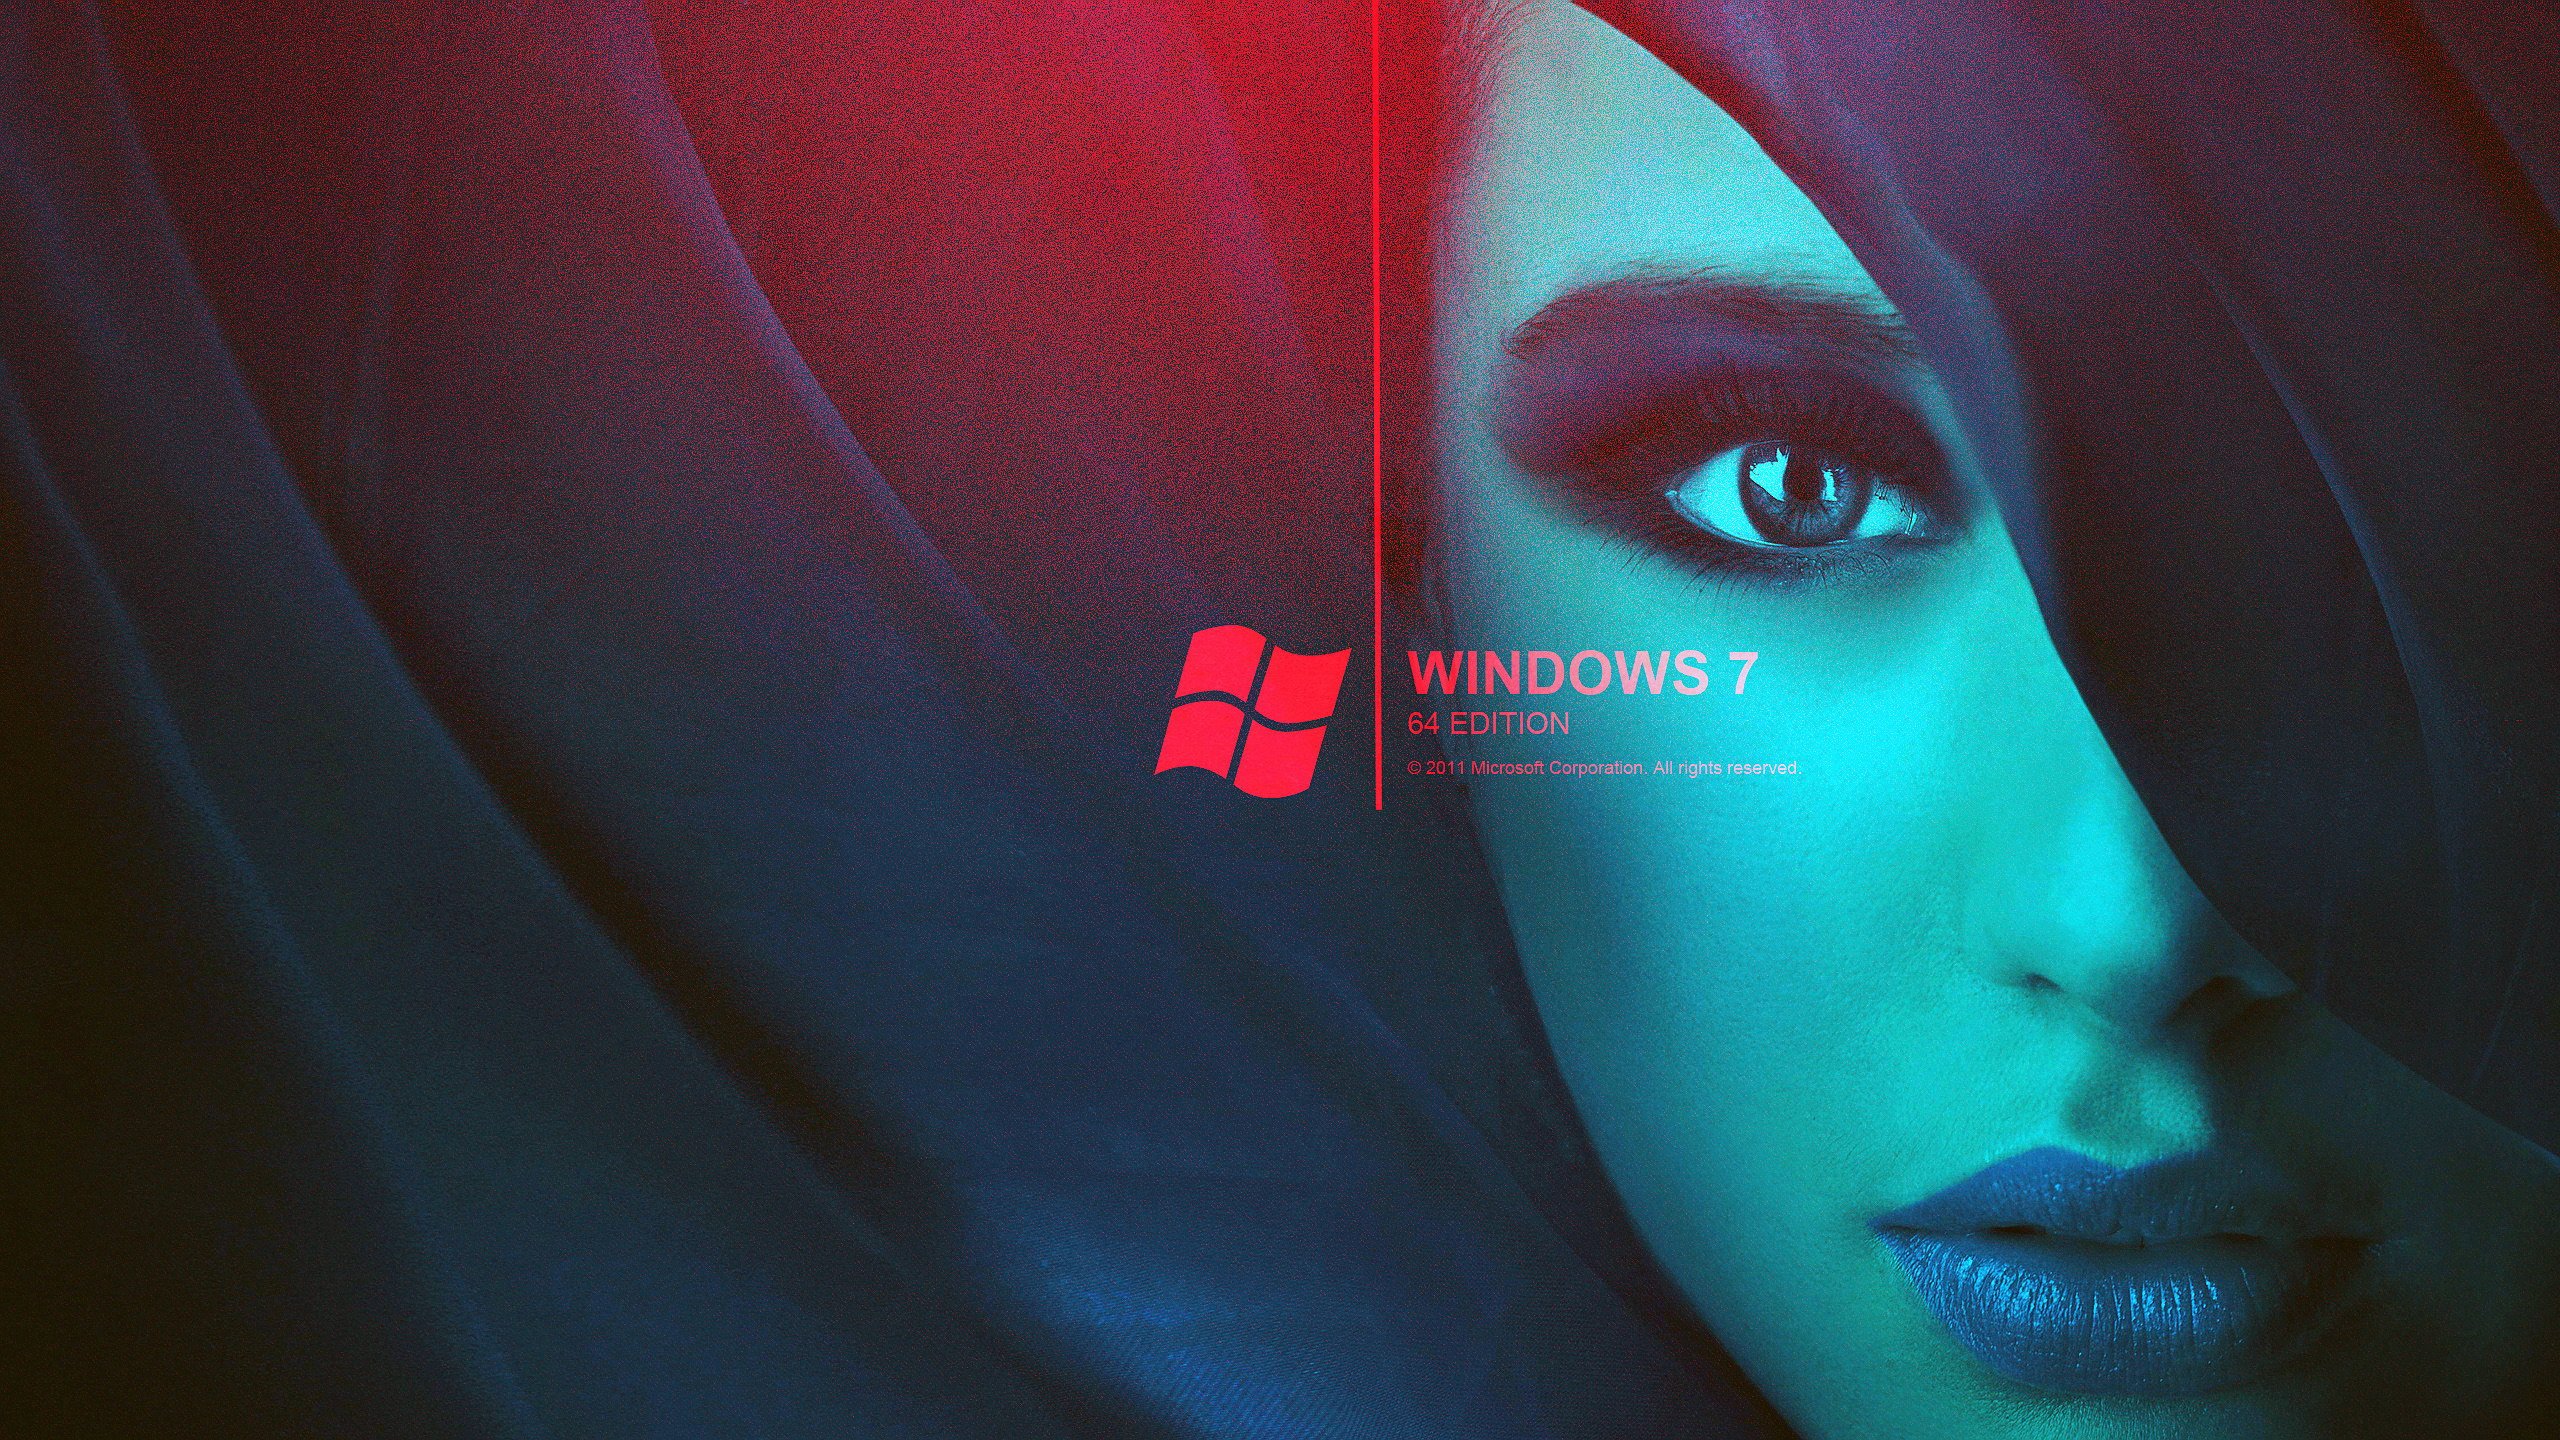 Wallpaper Windows 7 64 Bit - Wallpapersafari